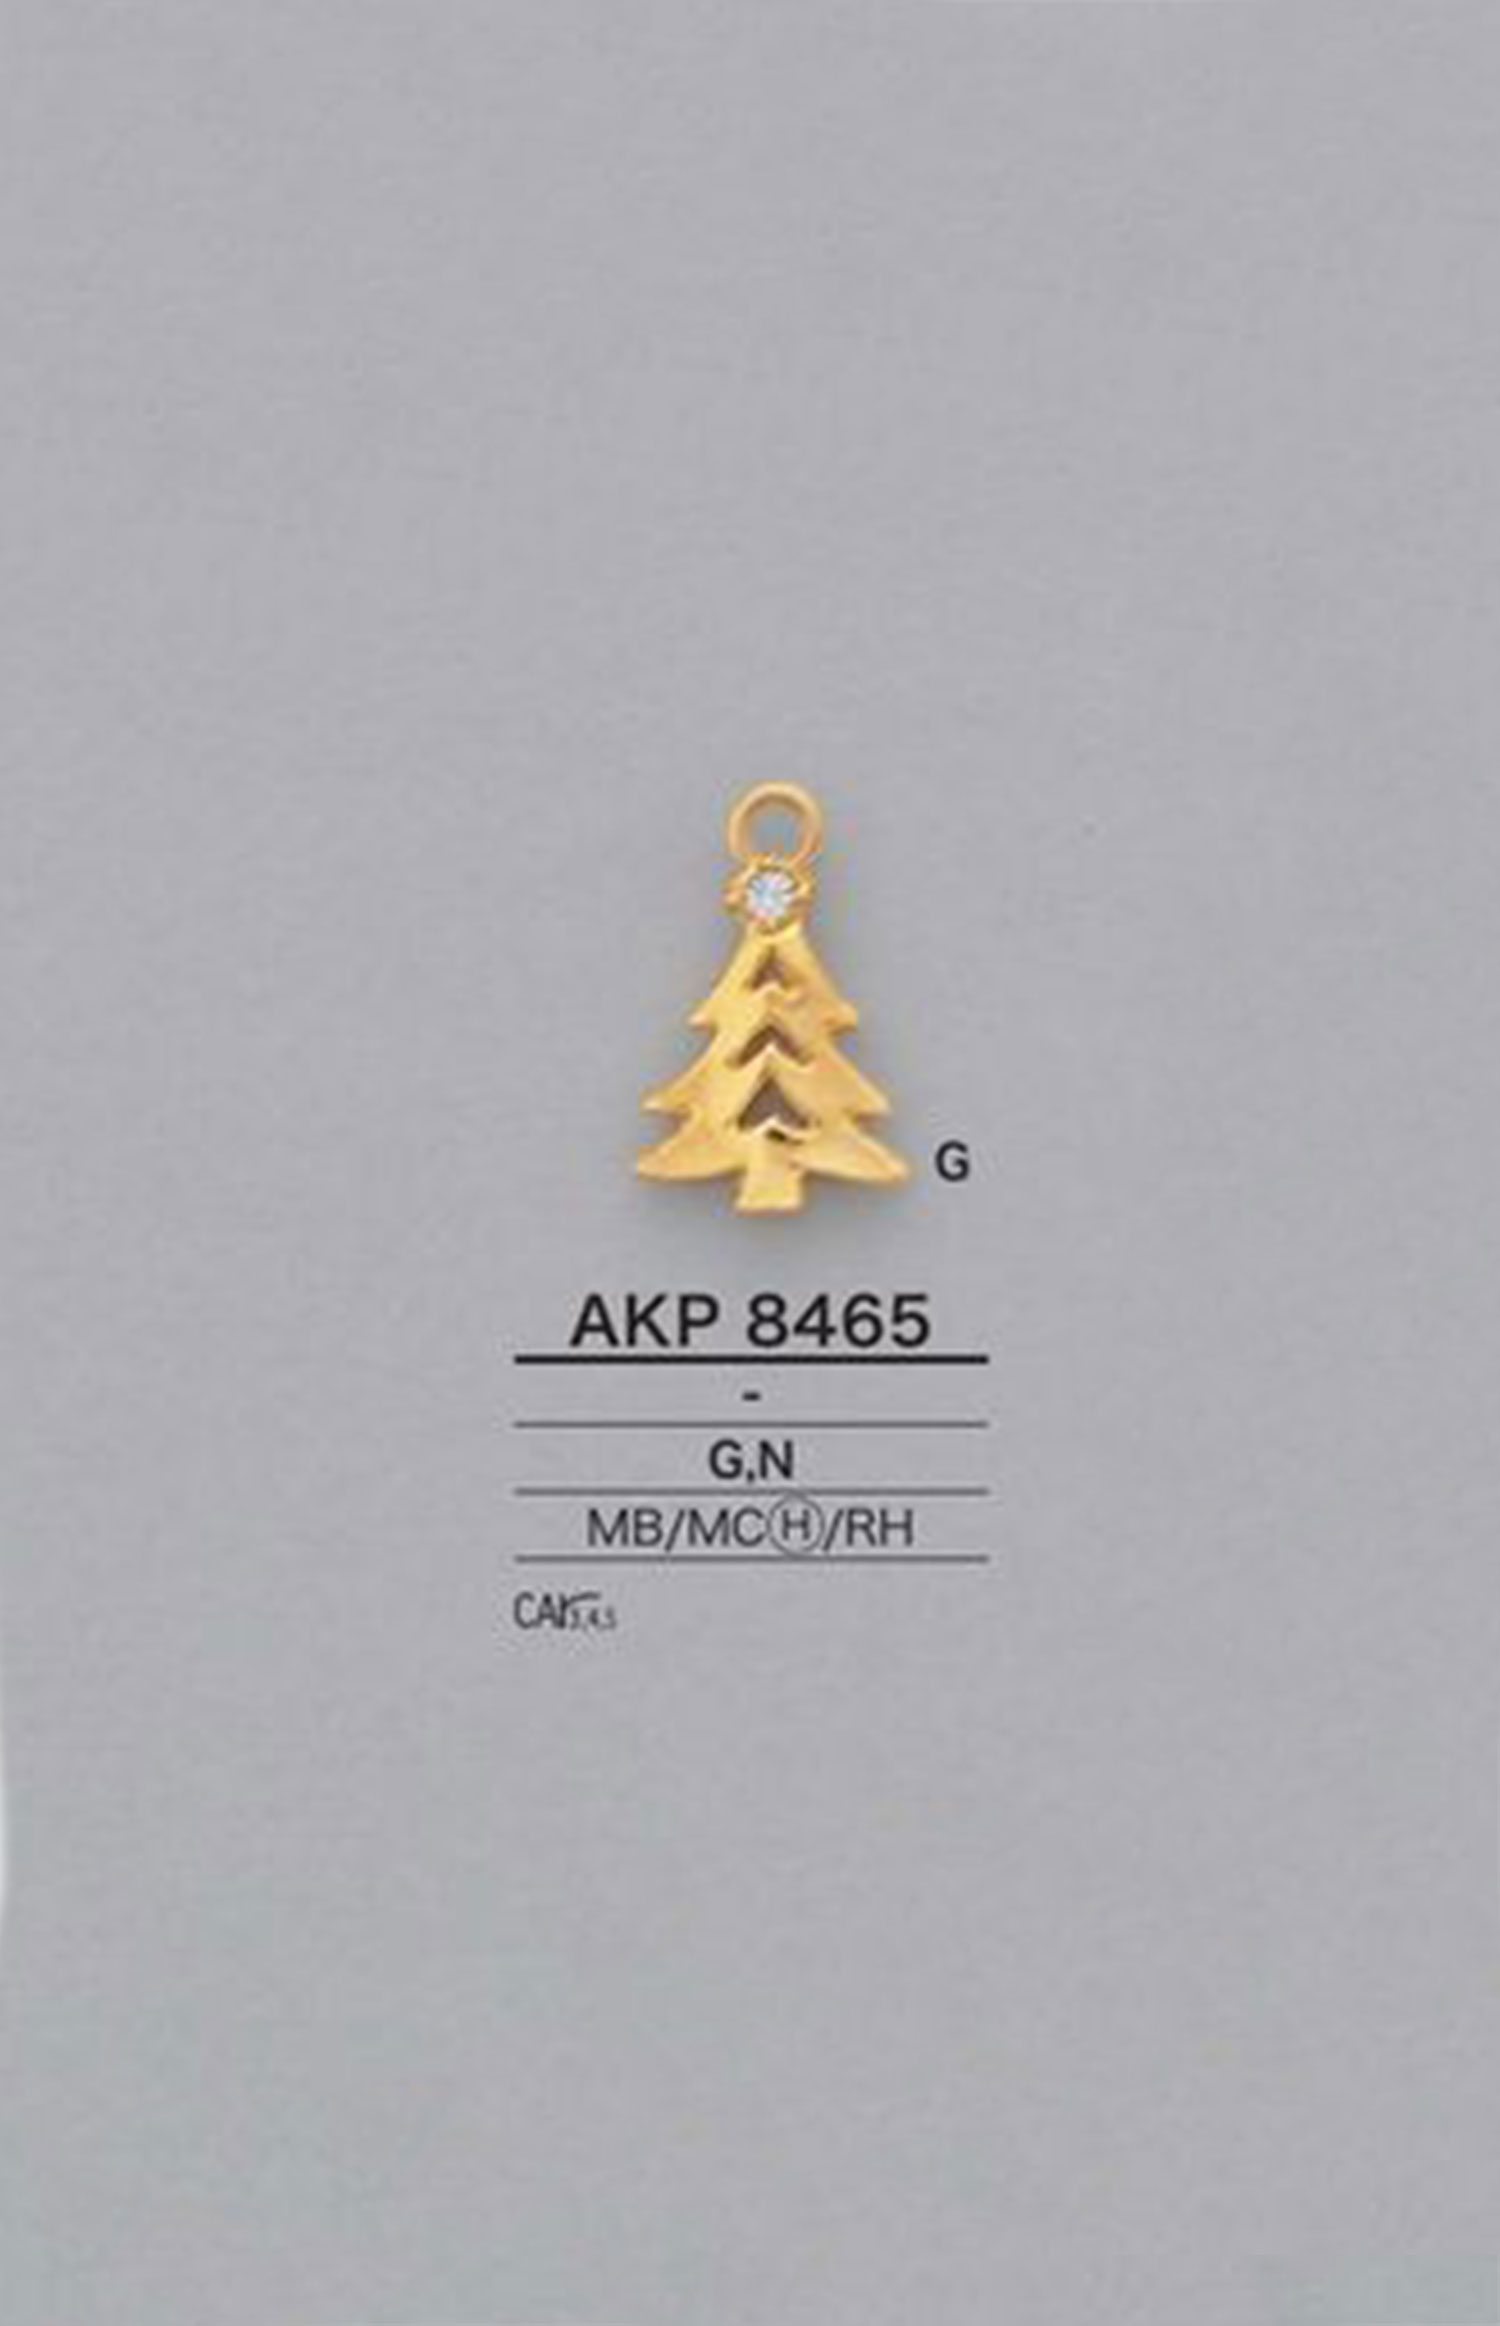 AKP8465 Baumtyp Reißverschlusspunkt (Ziehlasche) IRIS